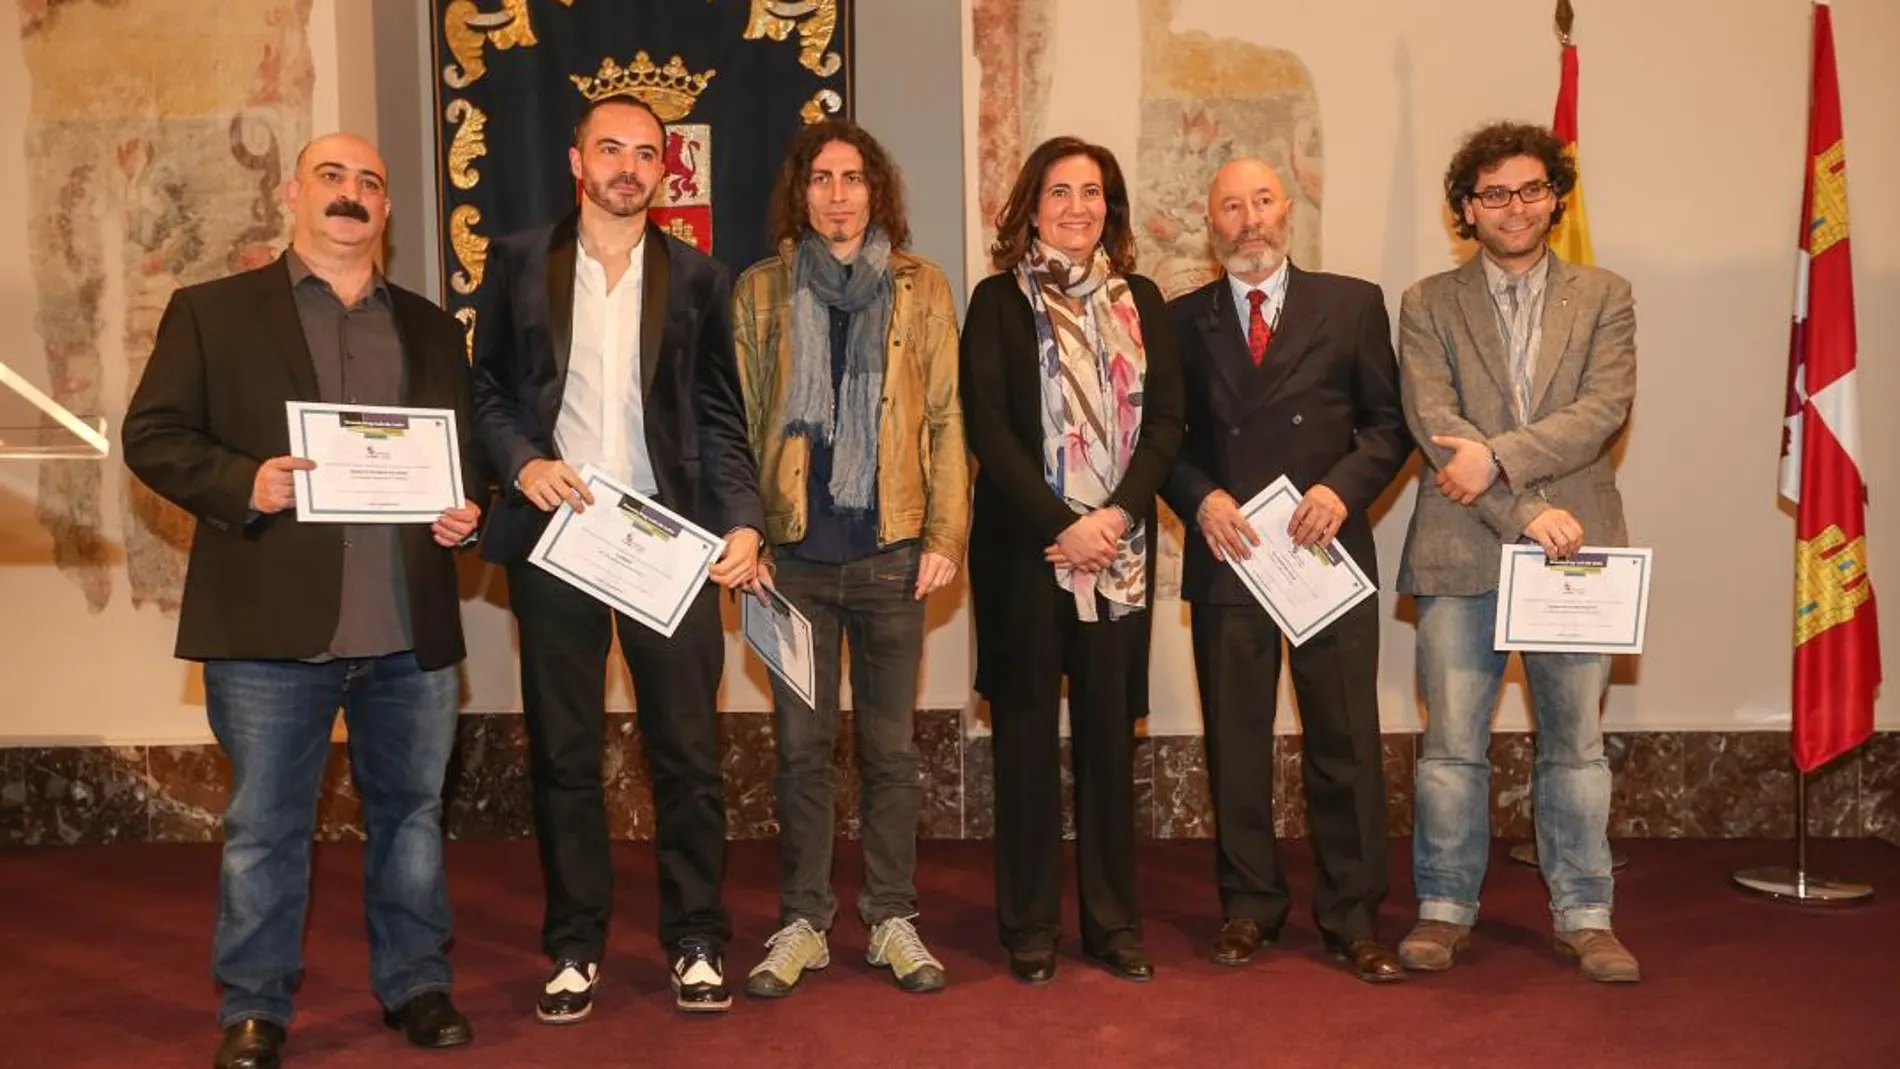 La consejera de Cultura y Turismo, María Josefa García Cirac, junto con los galardonados con los Premios Fray Luis de León